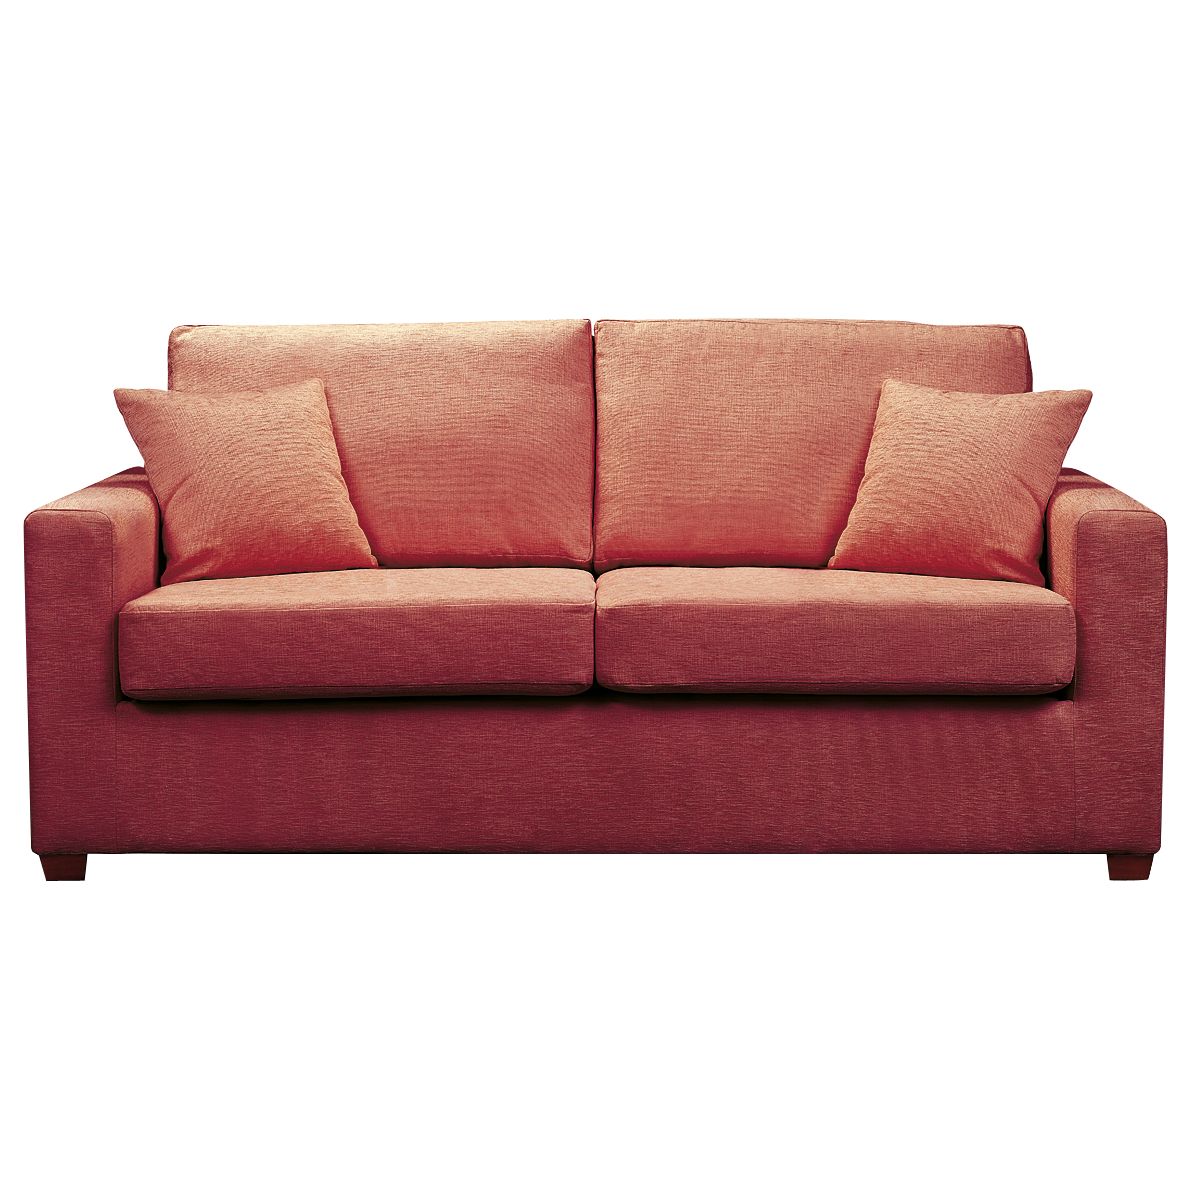 John Lewis Ravel Grand Sofa Bed, Red at John Lewis